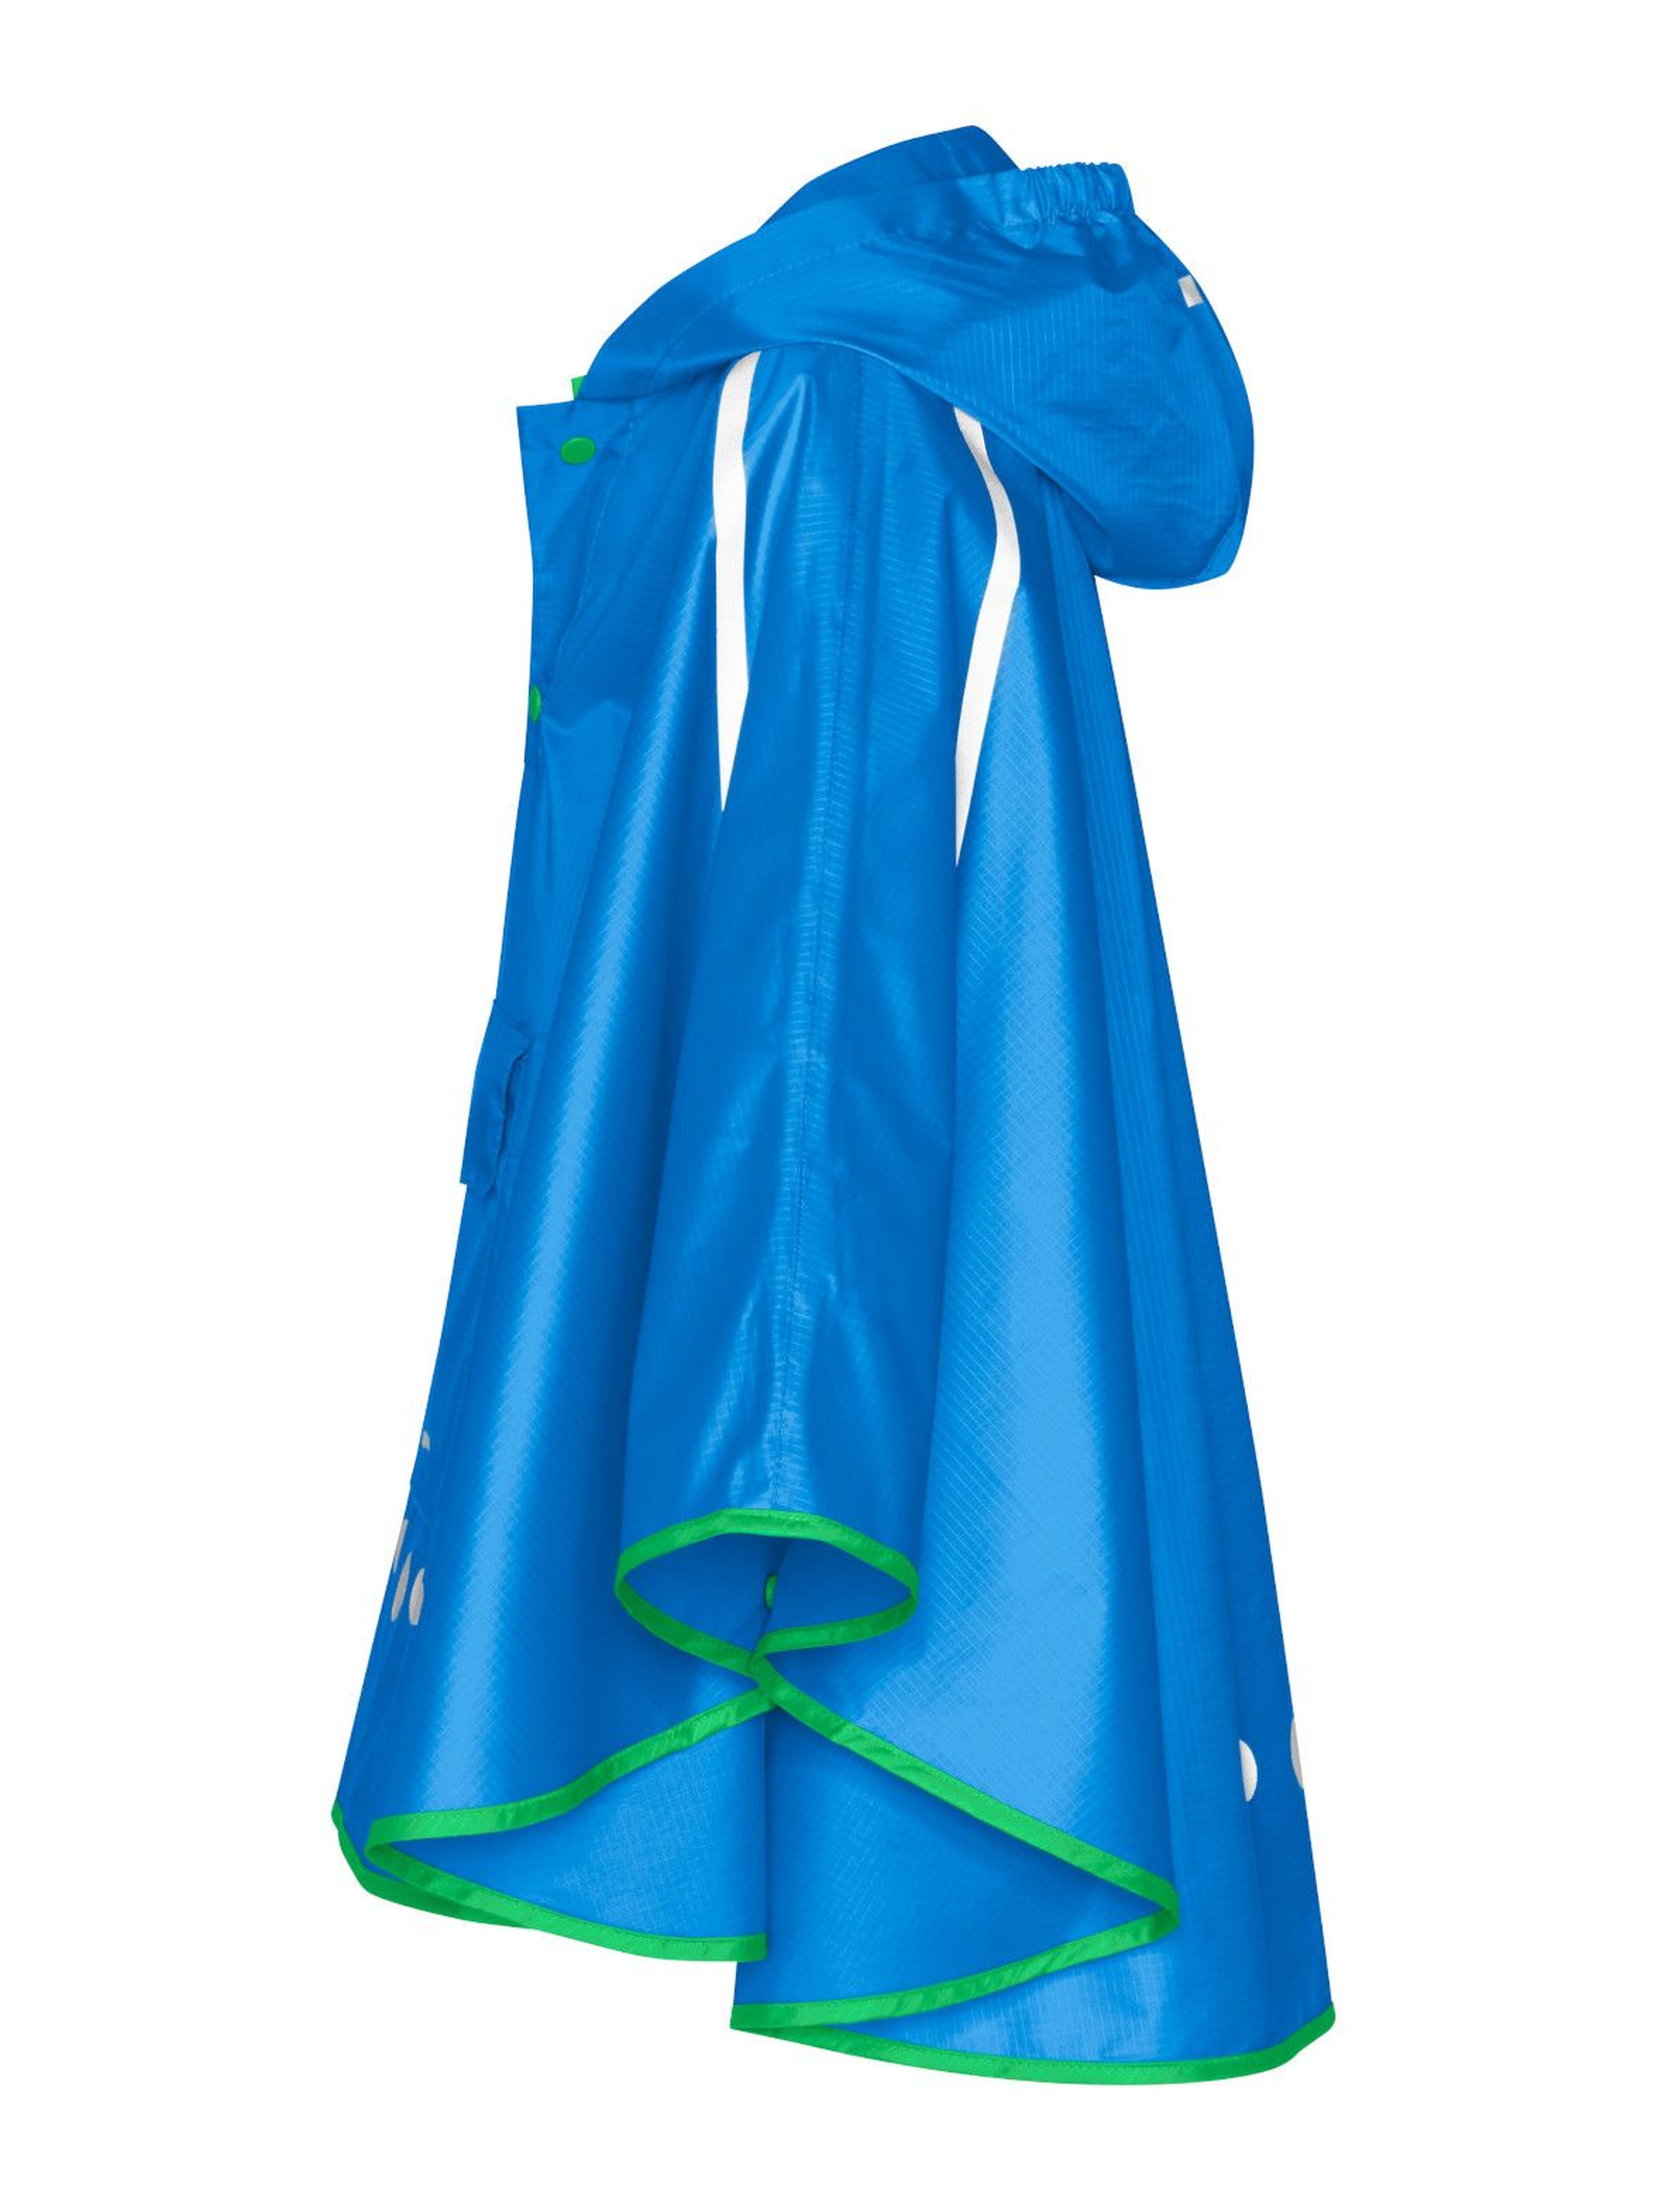 Poncho przeciwdeszczowe składane do torebki niebieski